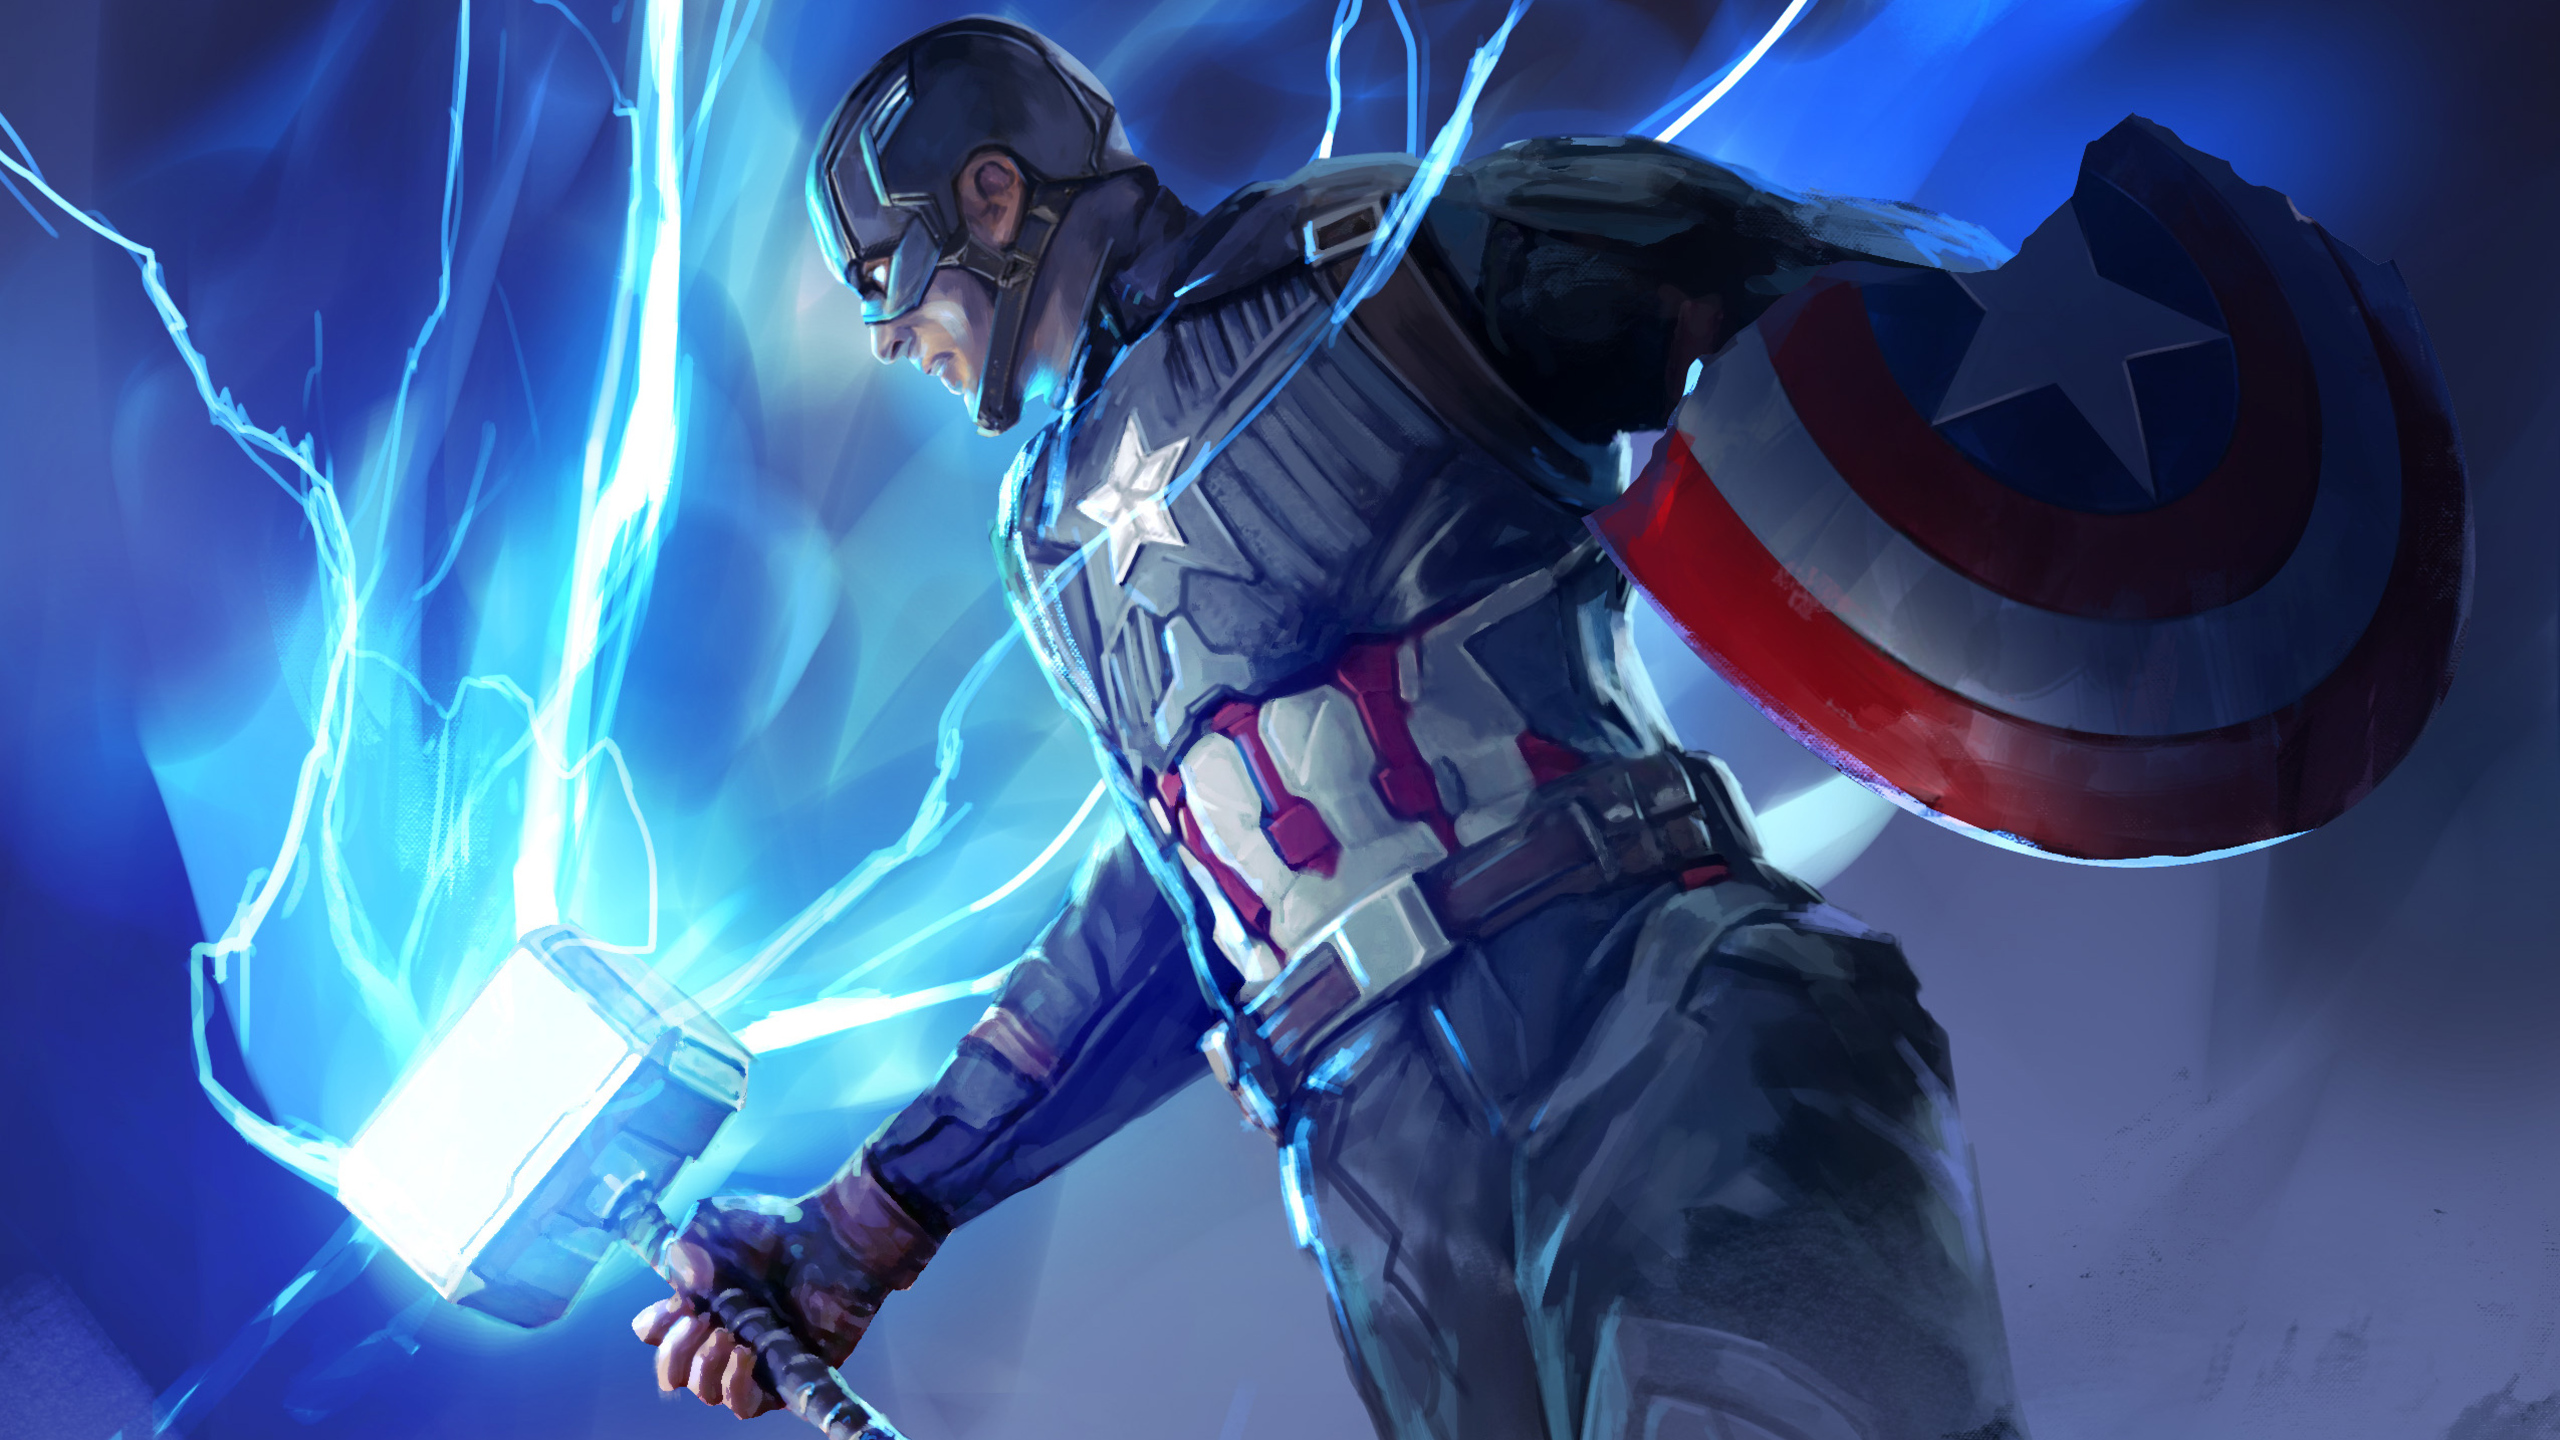 Captain America In Avengers Endgame Wallpapers